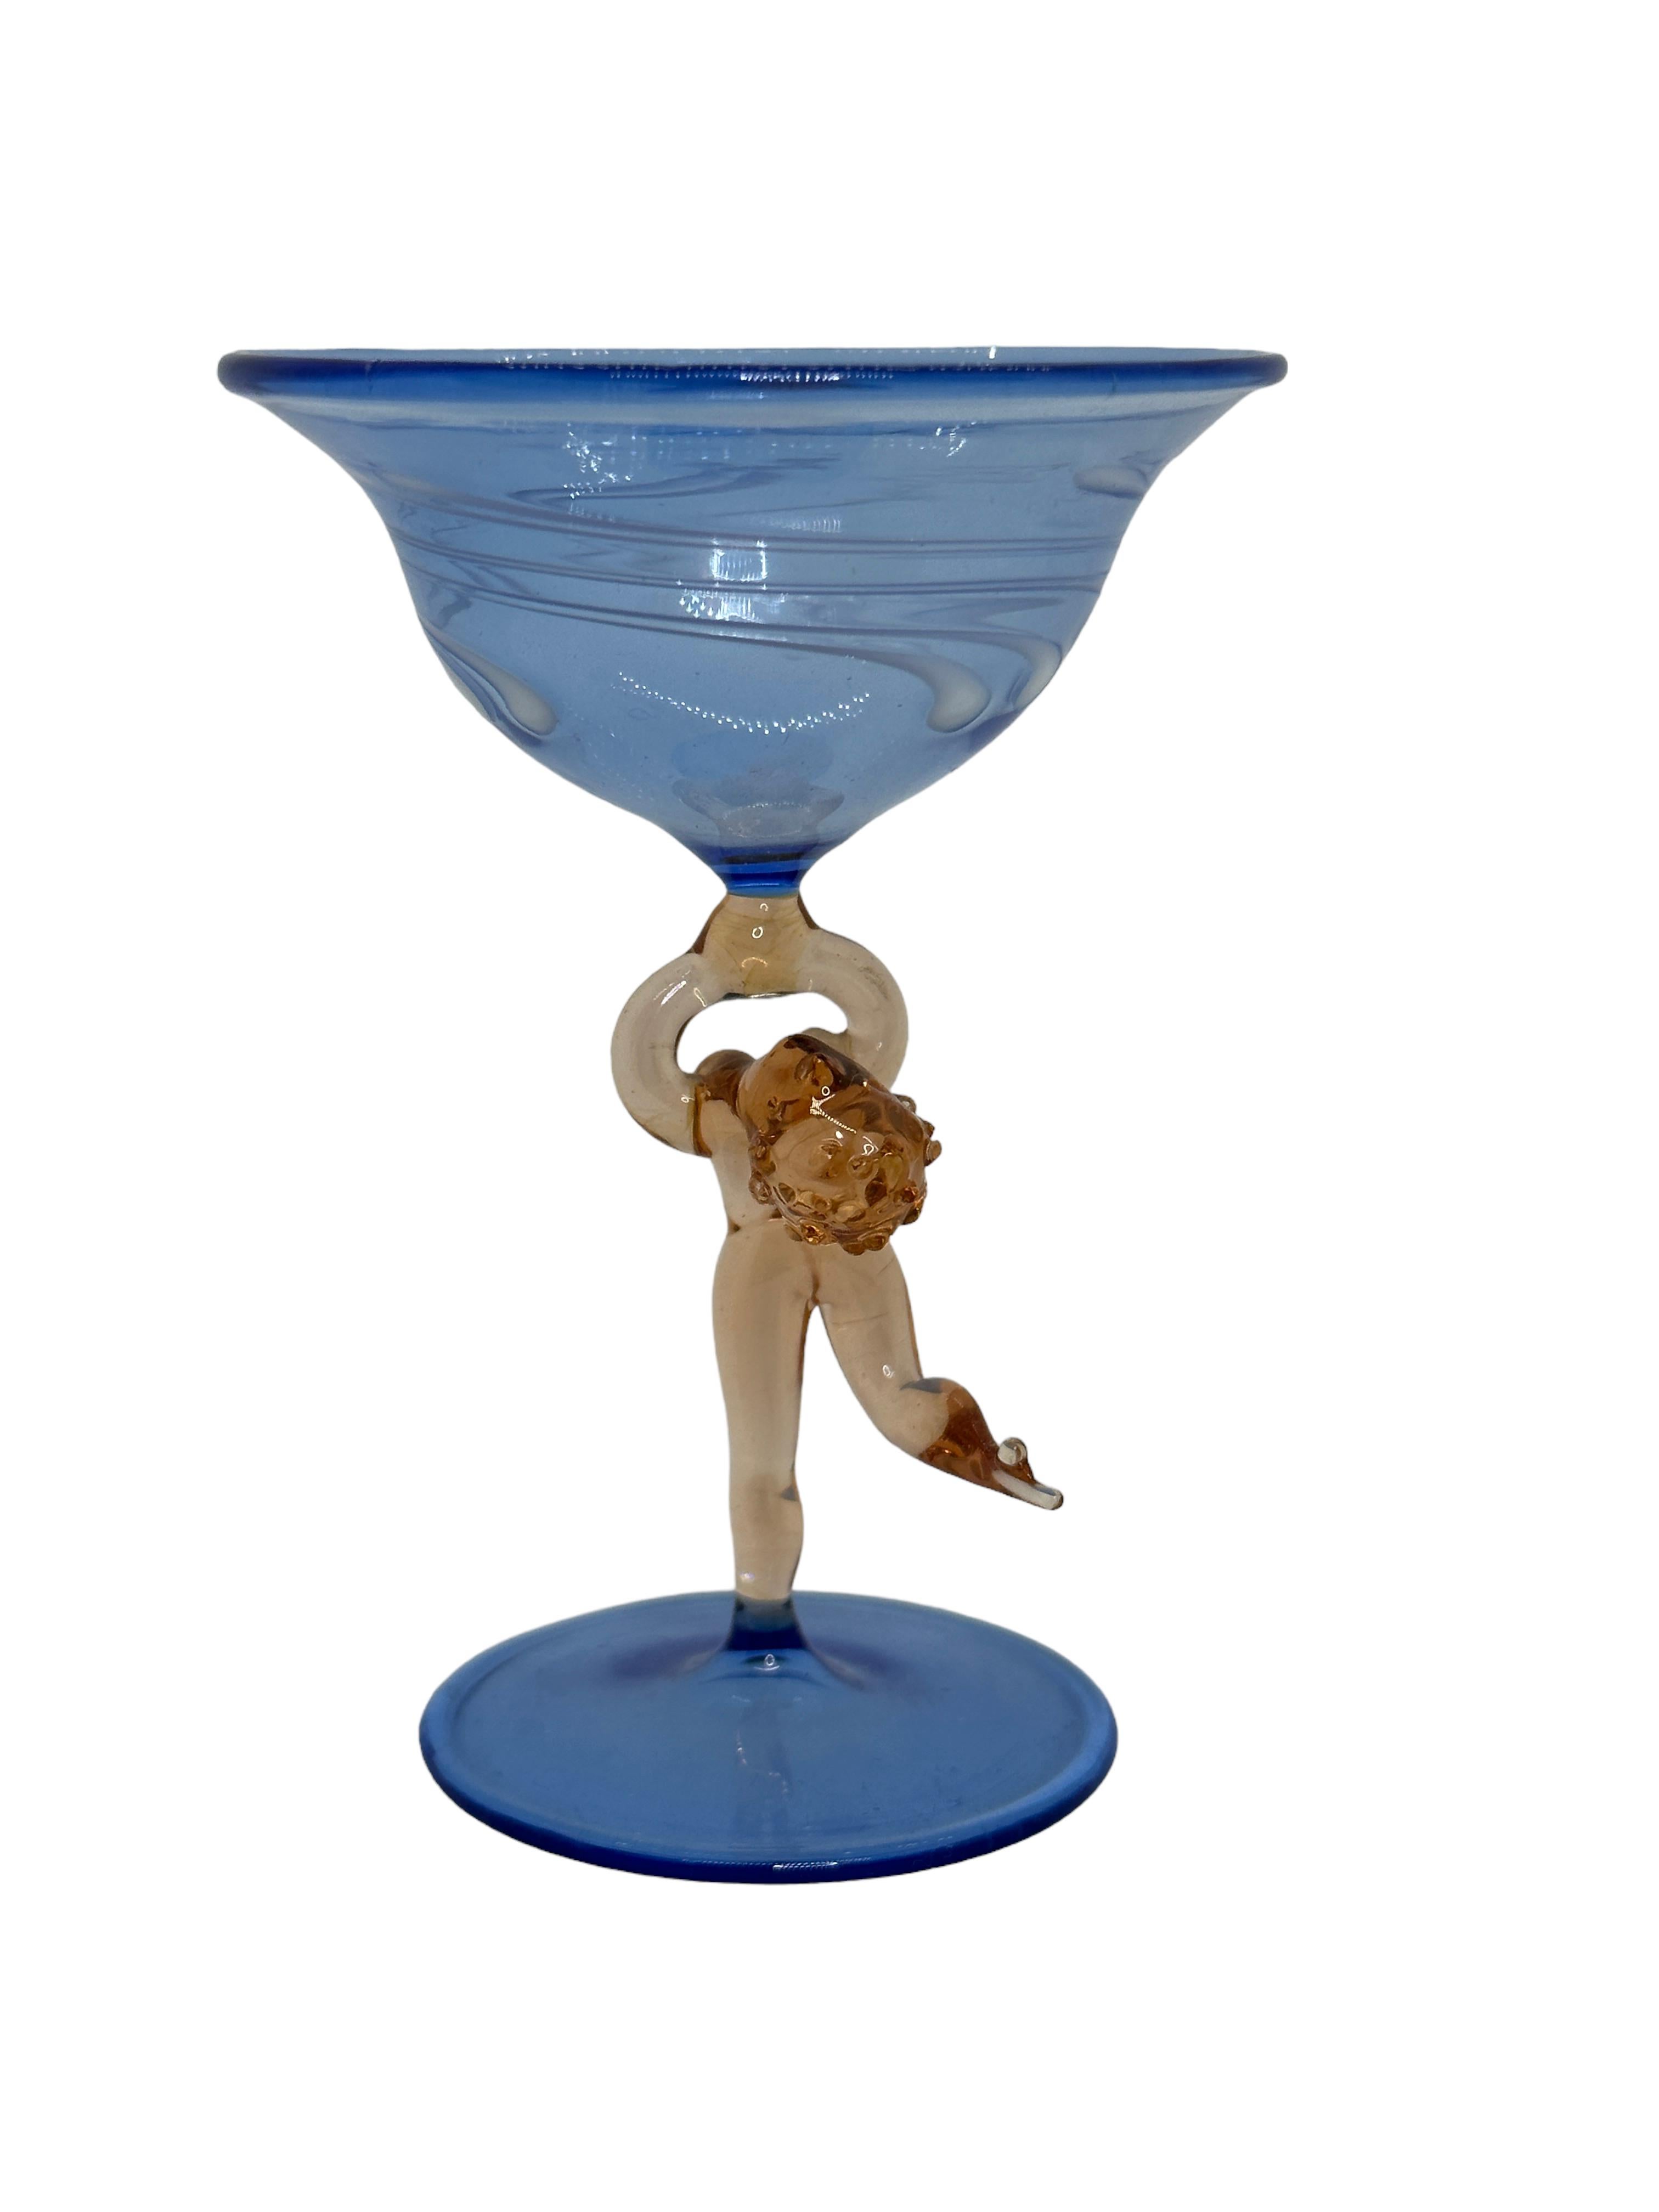 Dies ist ein wunderschönes, einfaches Vintage-Cocktailglas mit Stiel aus Österreich. Es hat einen nackten Frauenschaft und ist im Bimini-Stil gehalten. Das blaue Glas hat ein geprägtes Design, der Stiel ist eine nackte Dame in rosafarbener Farbe.